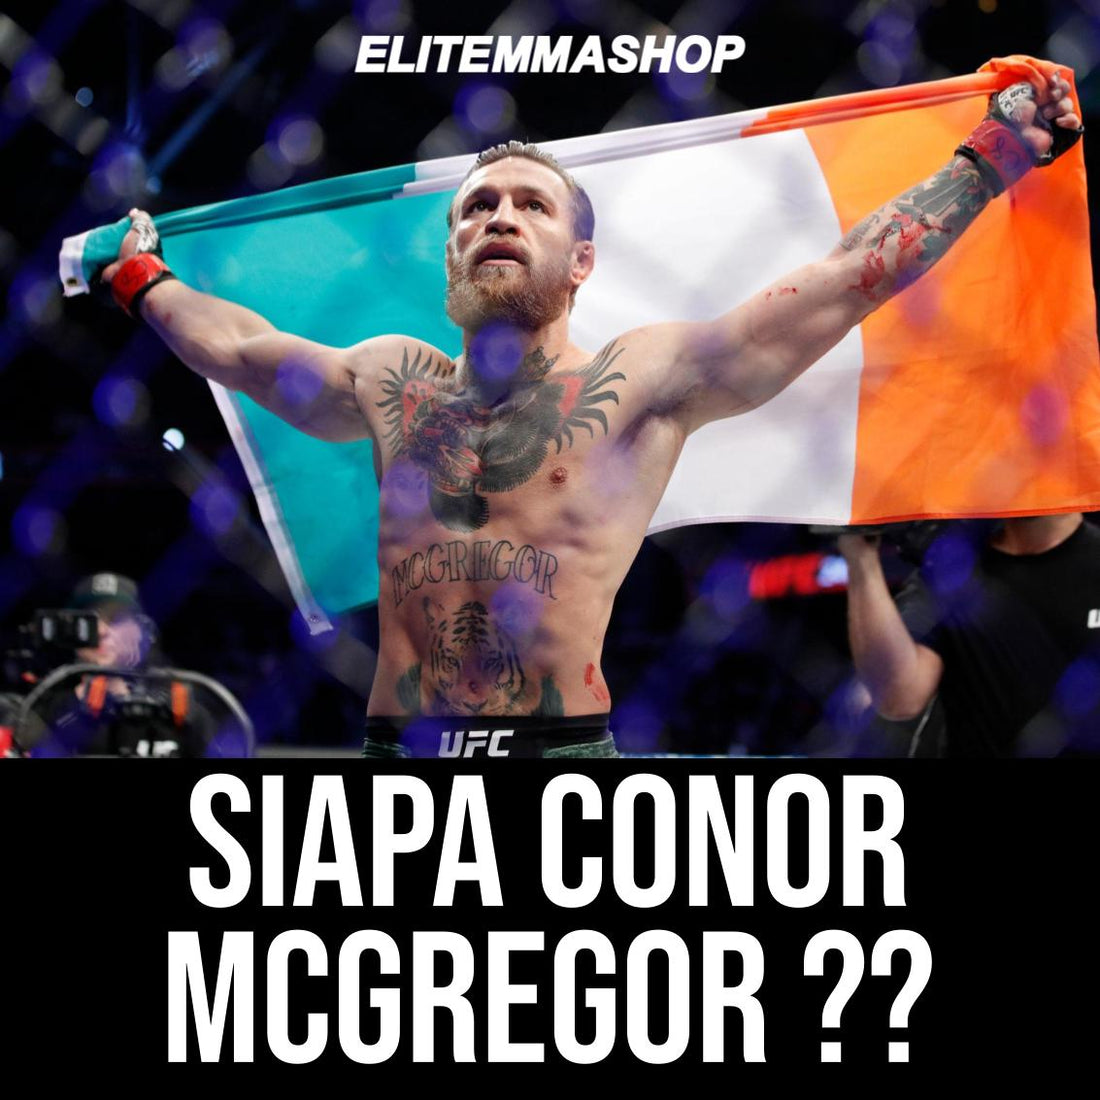 Siapa Conor McGregor?